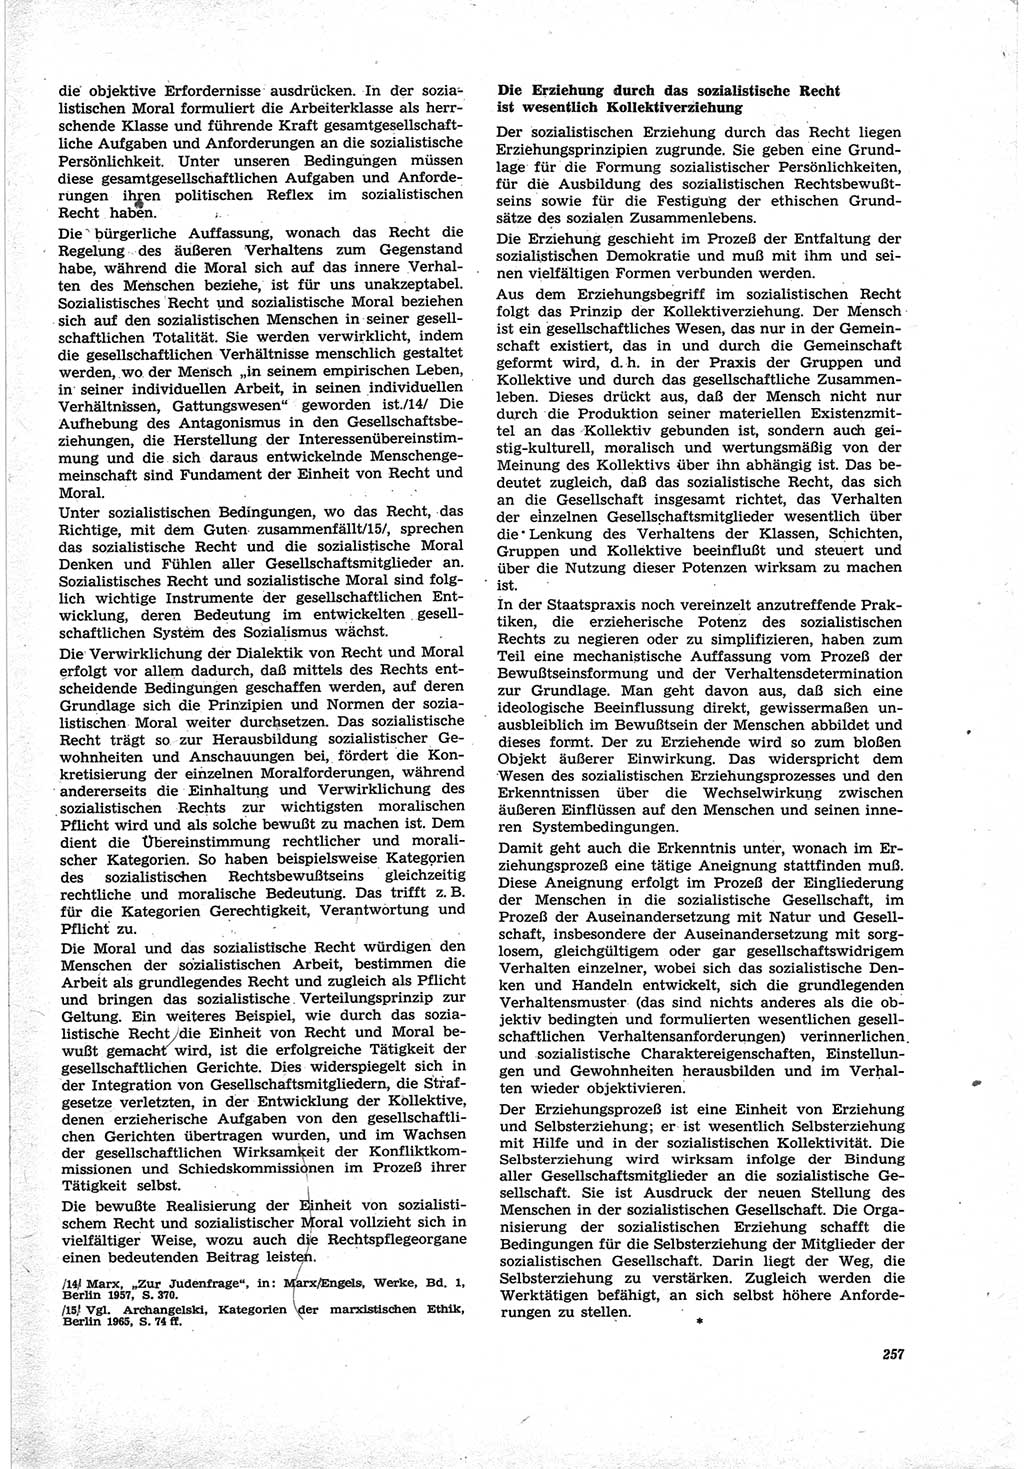 Neue Justiz (NJ), Zeitschrift für Recht und Rechtswissenschaft [Deutsche Demokratische Republik (DDR)], 25. Jahrgang 1971, Seite 257 (NJ DDR 1971, S. 257)